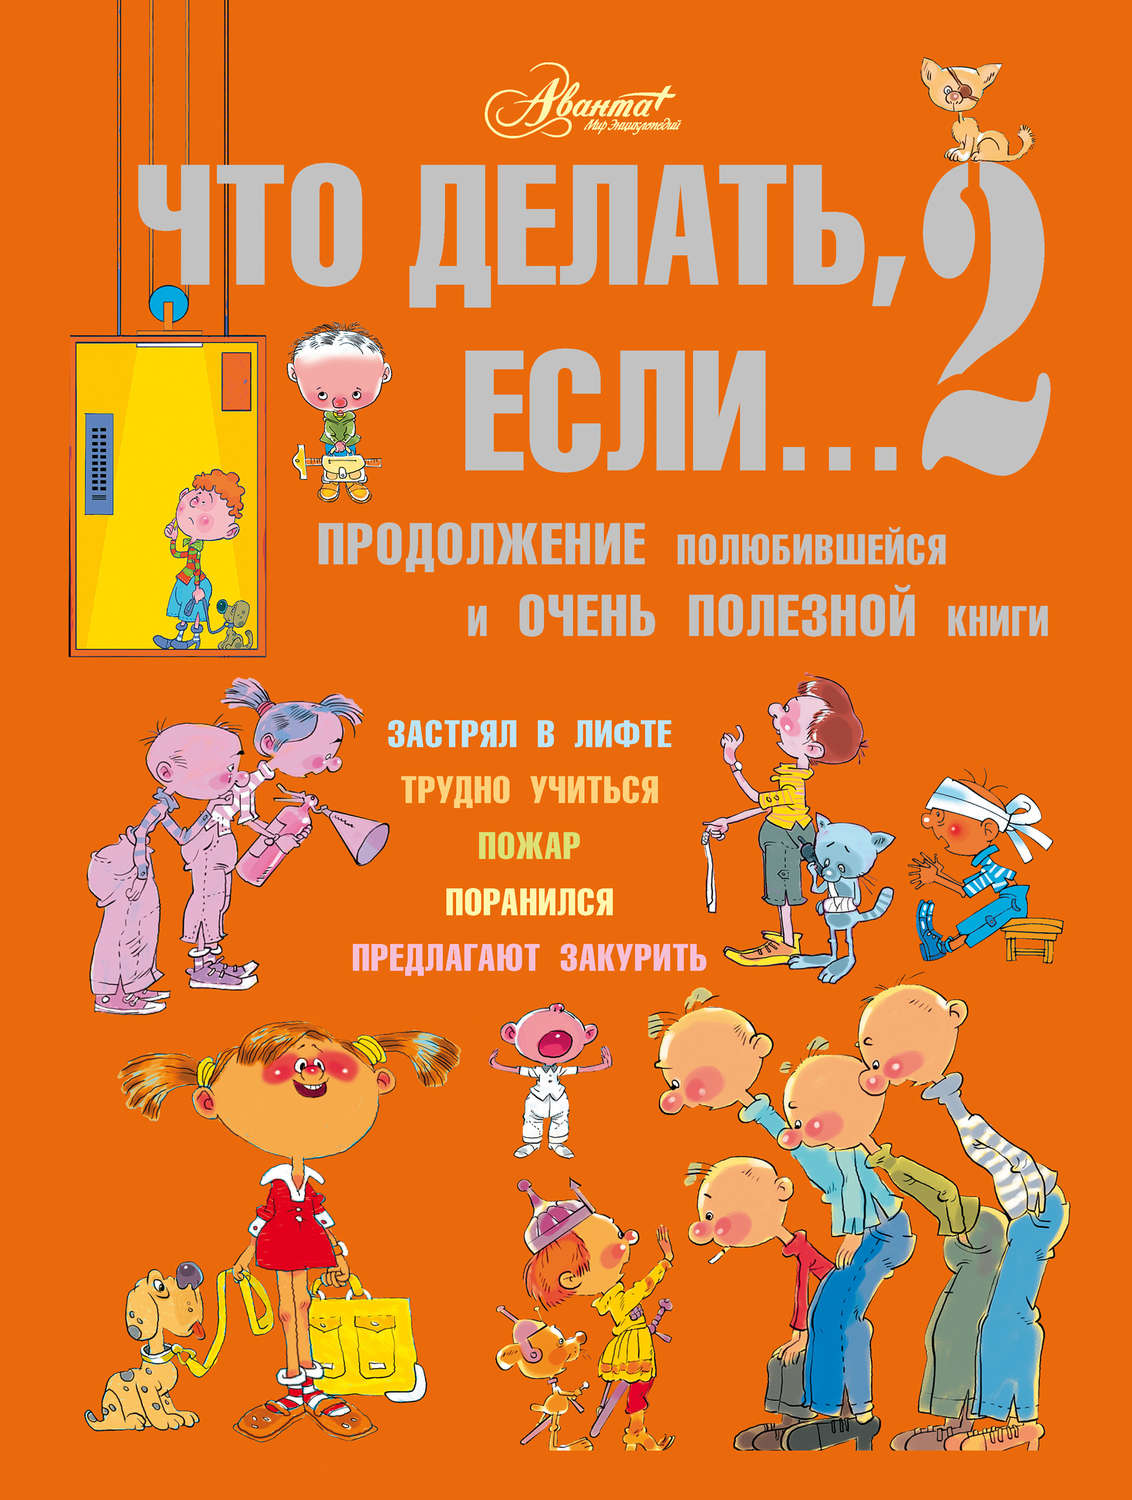 Скачать бесплатно книгу петрановской дитя двух семей